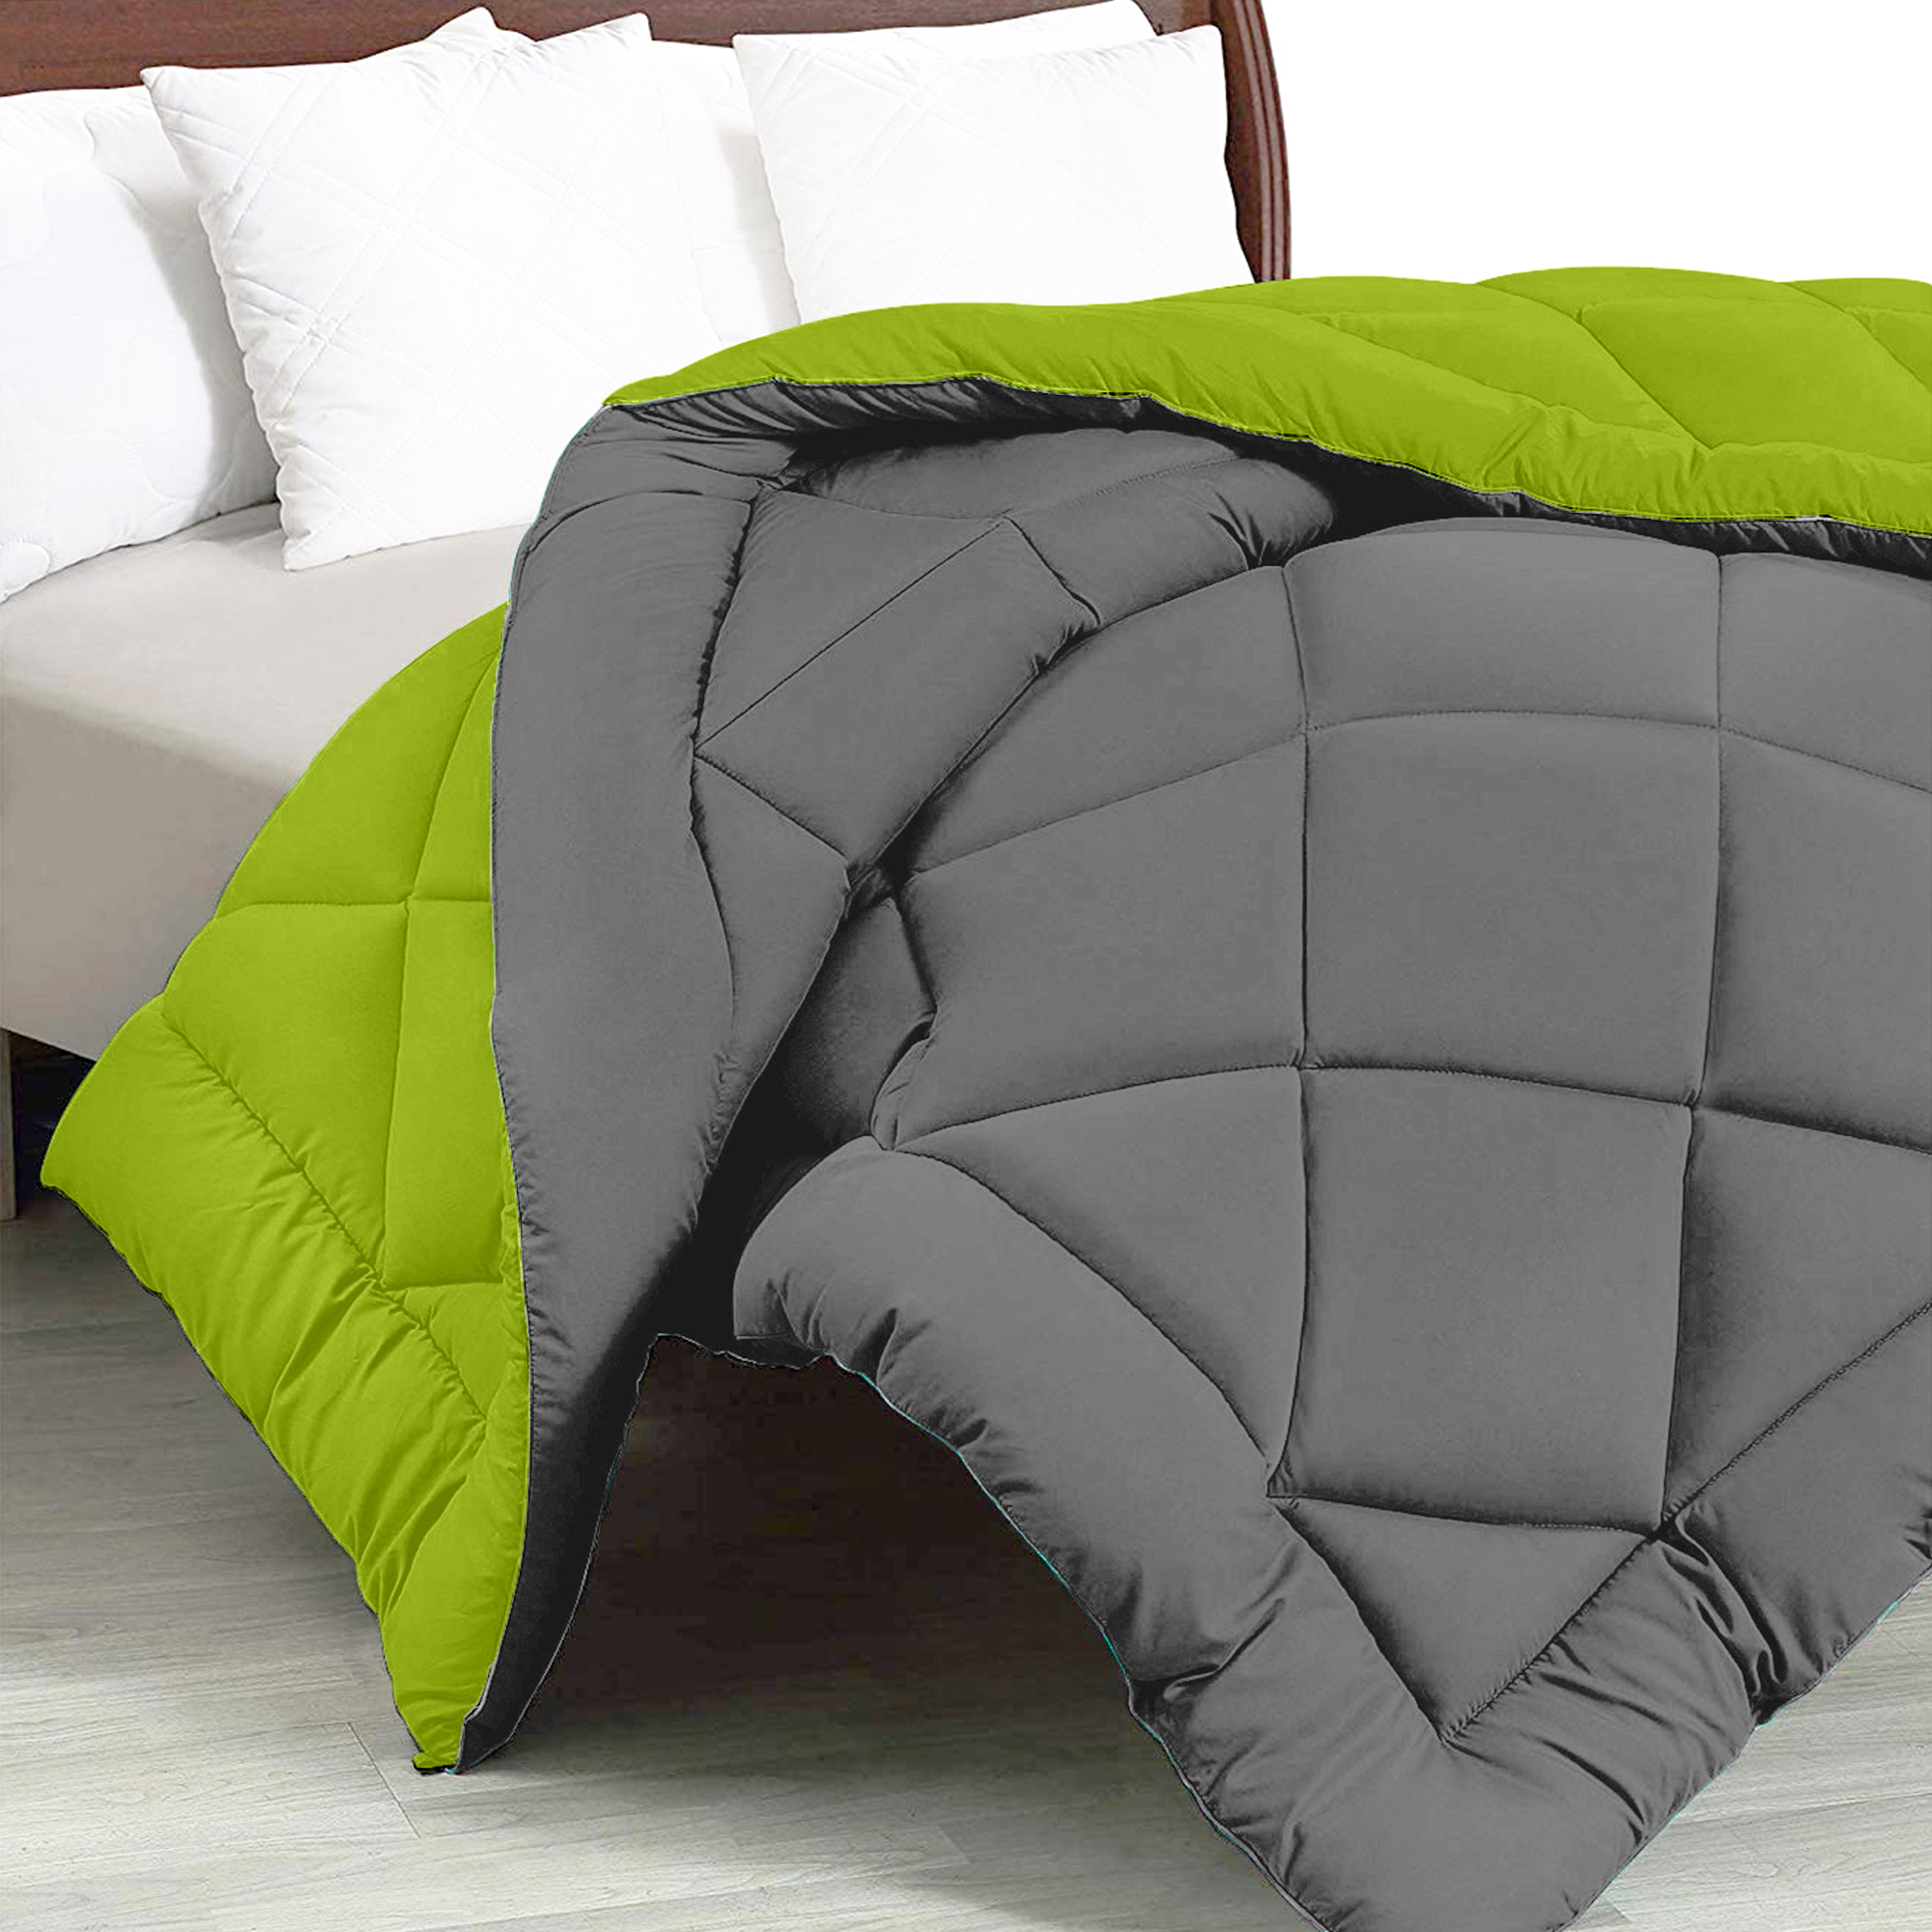 Dark Grey - Lemon Green Double Bed Comforter